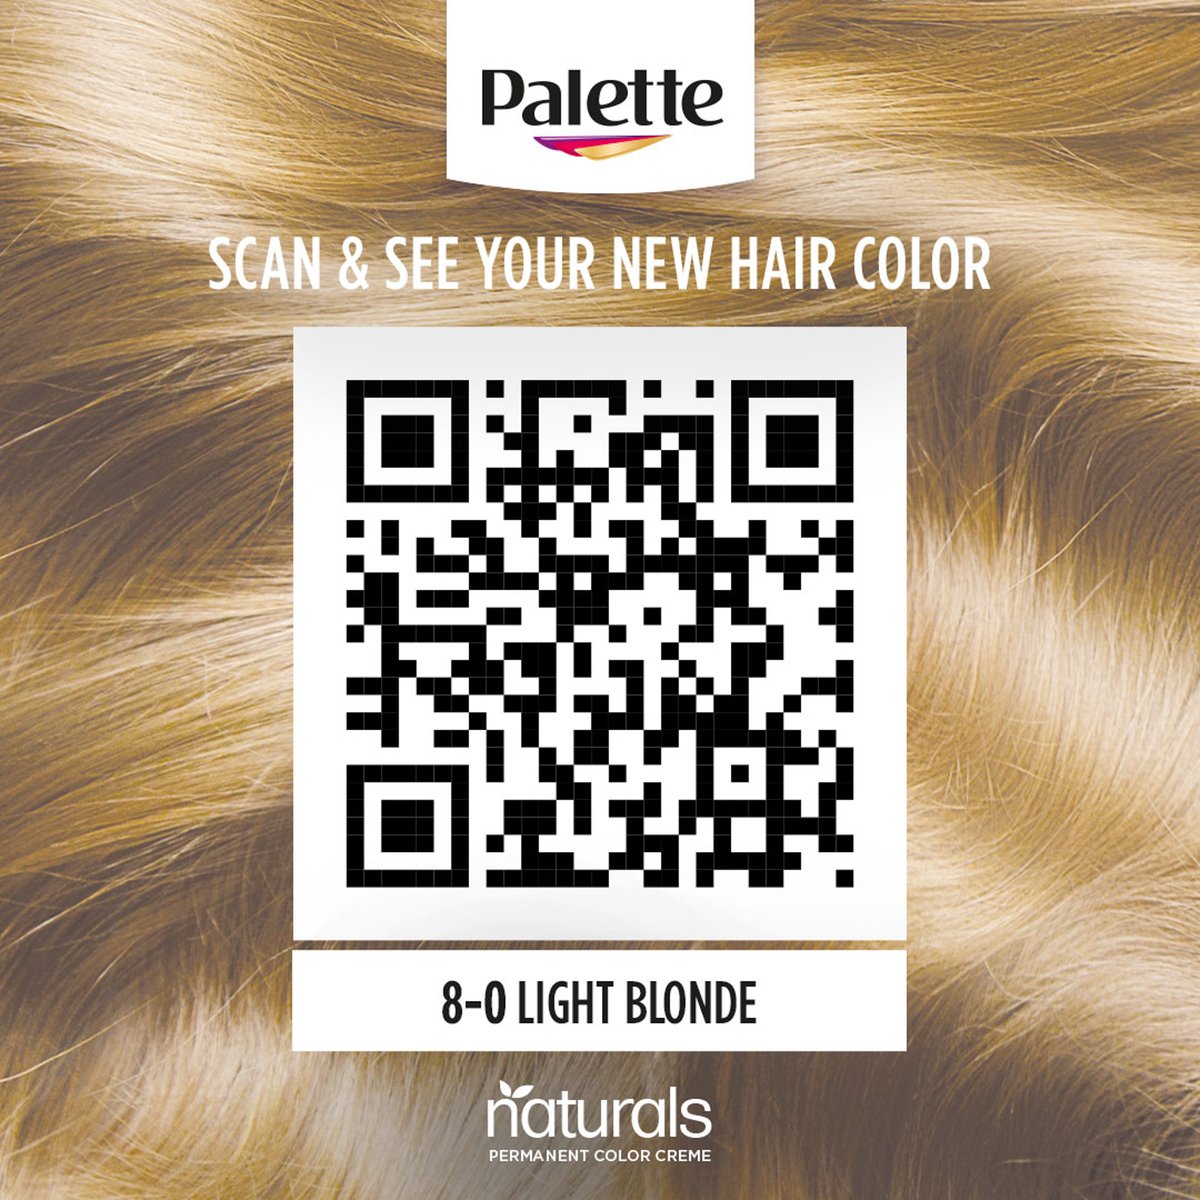 Palette Permanent Naturals Color Creme 8-0 Light Blonde 1 pkt